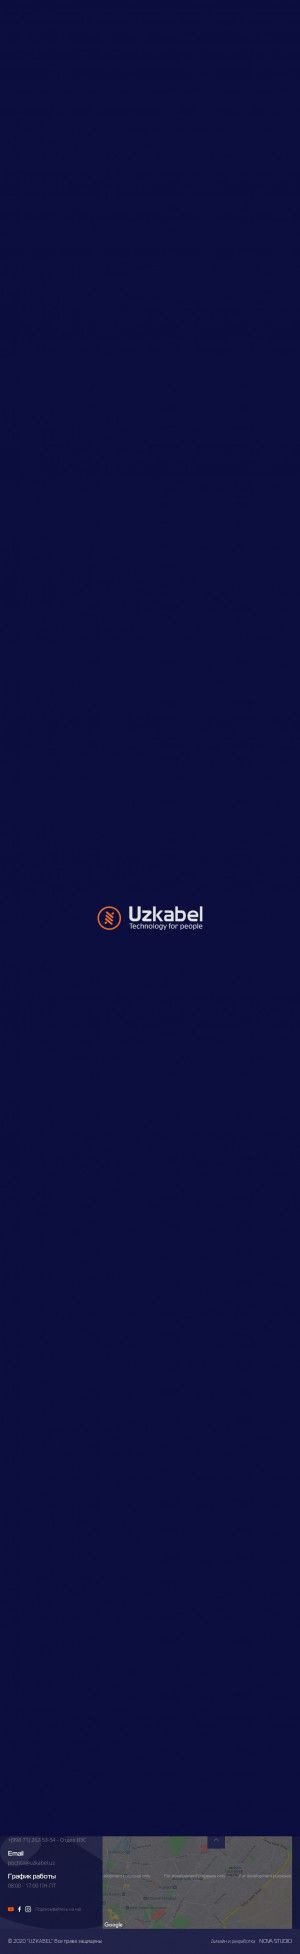 Предпросмотр для www.uzkabel.uz — Uzkabel